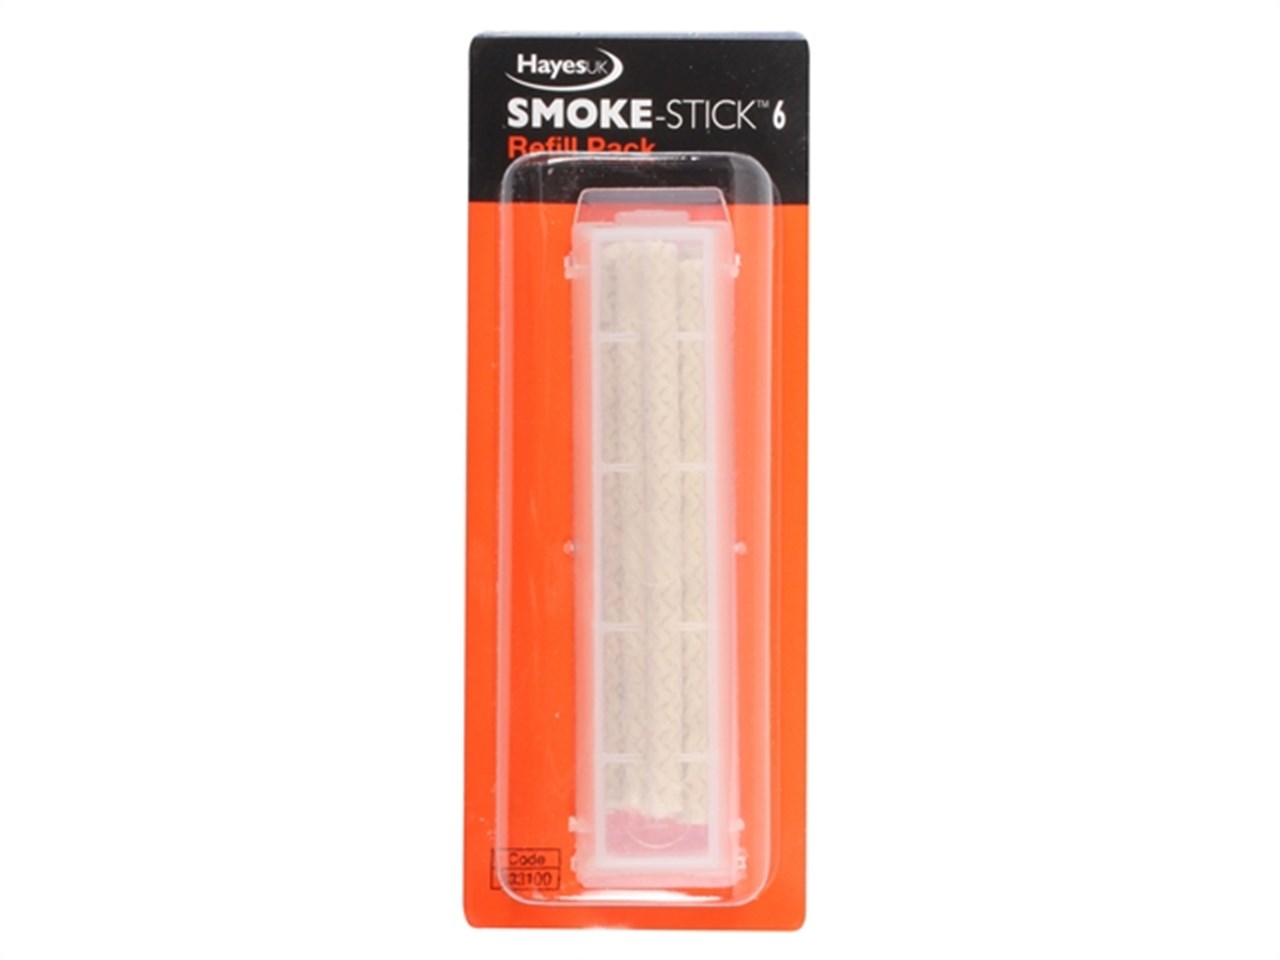 SMOKE STICKS PK 6